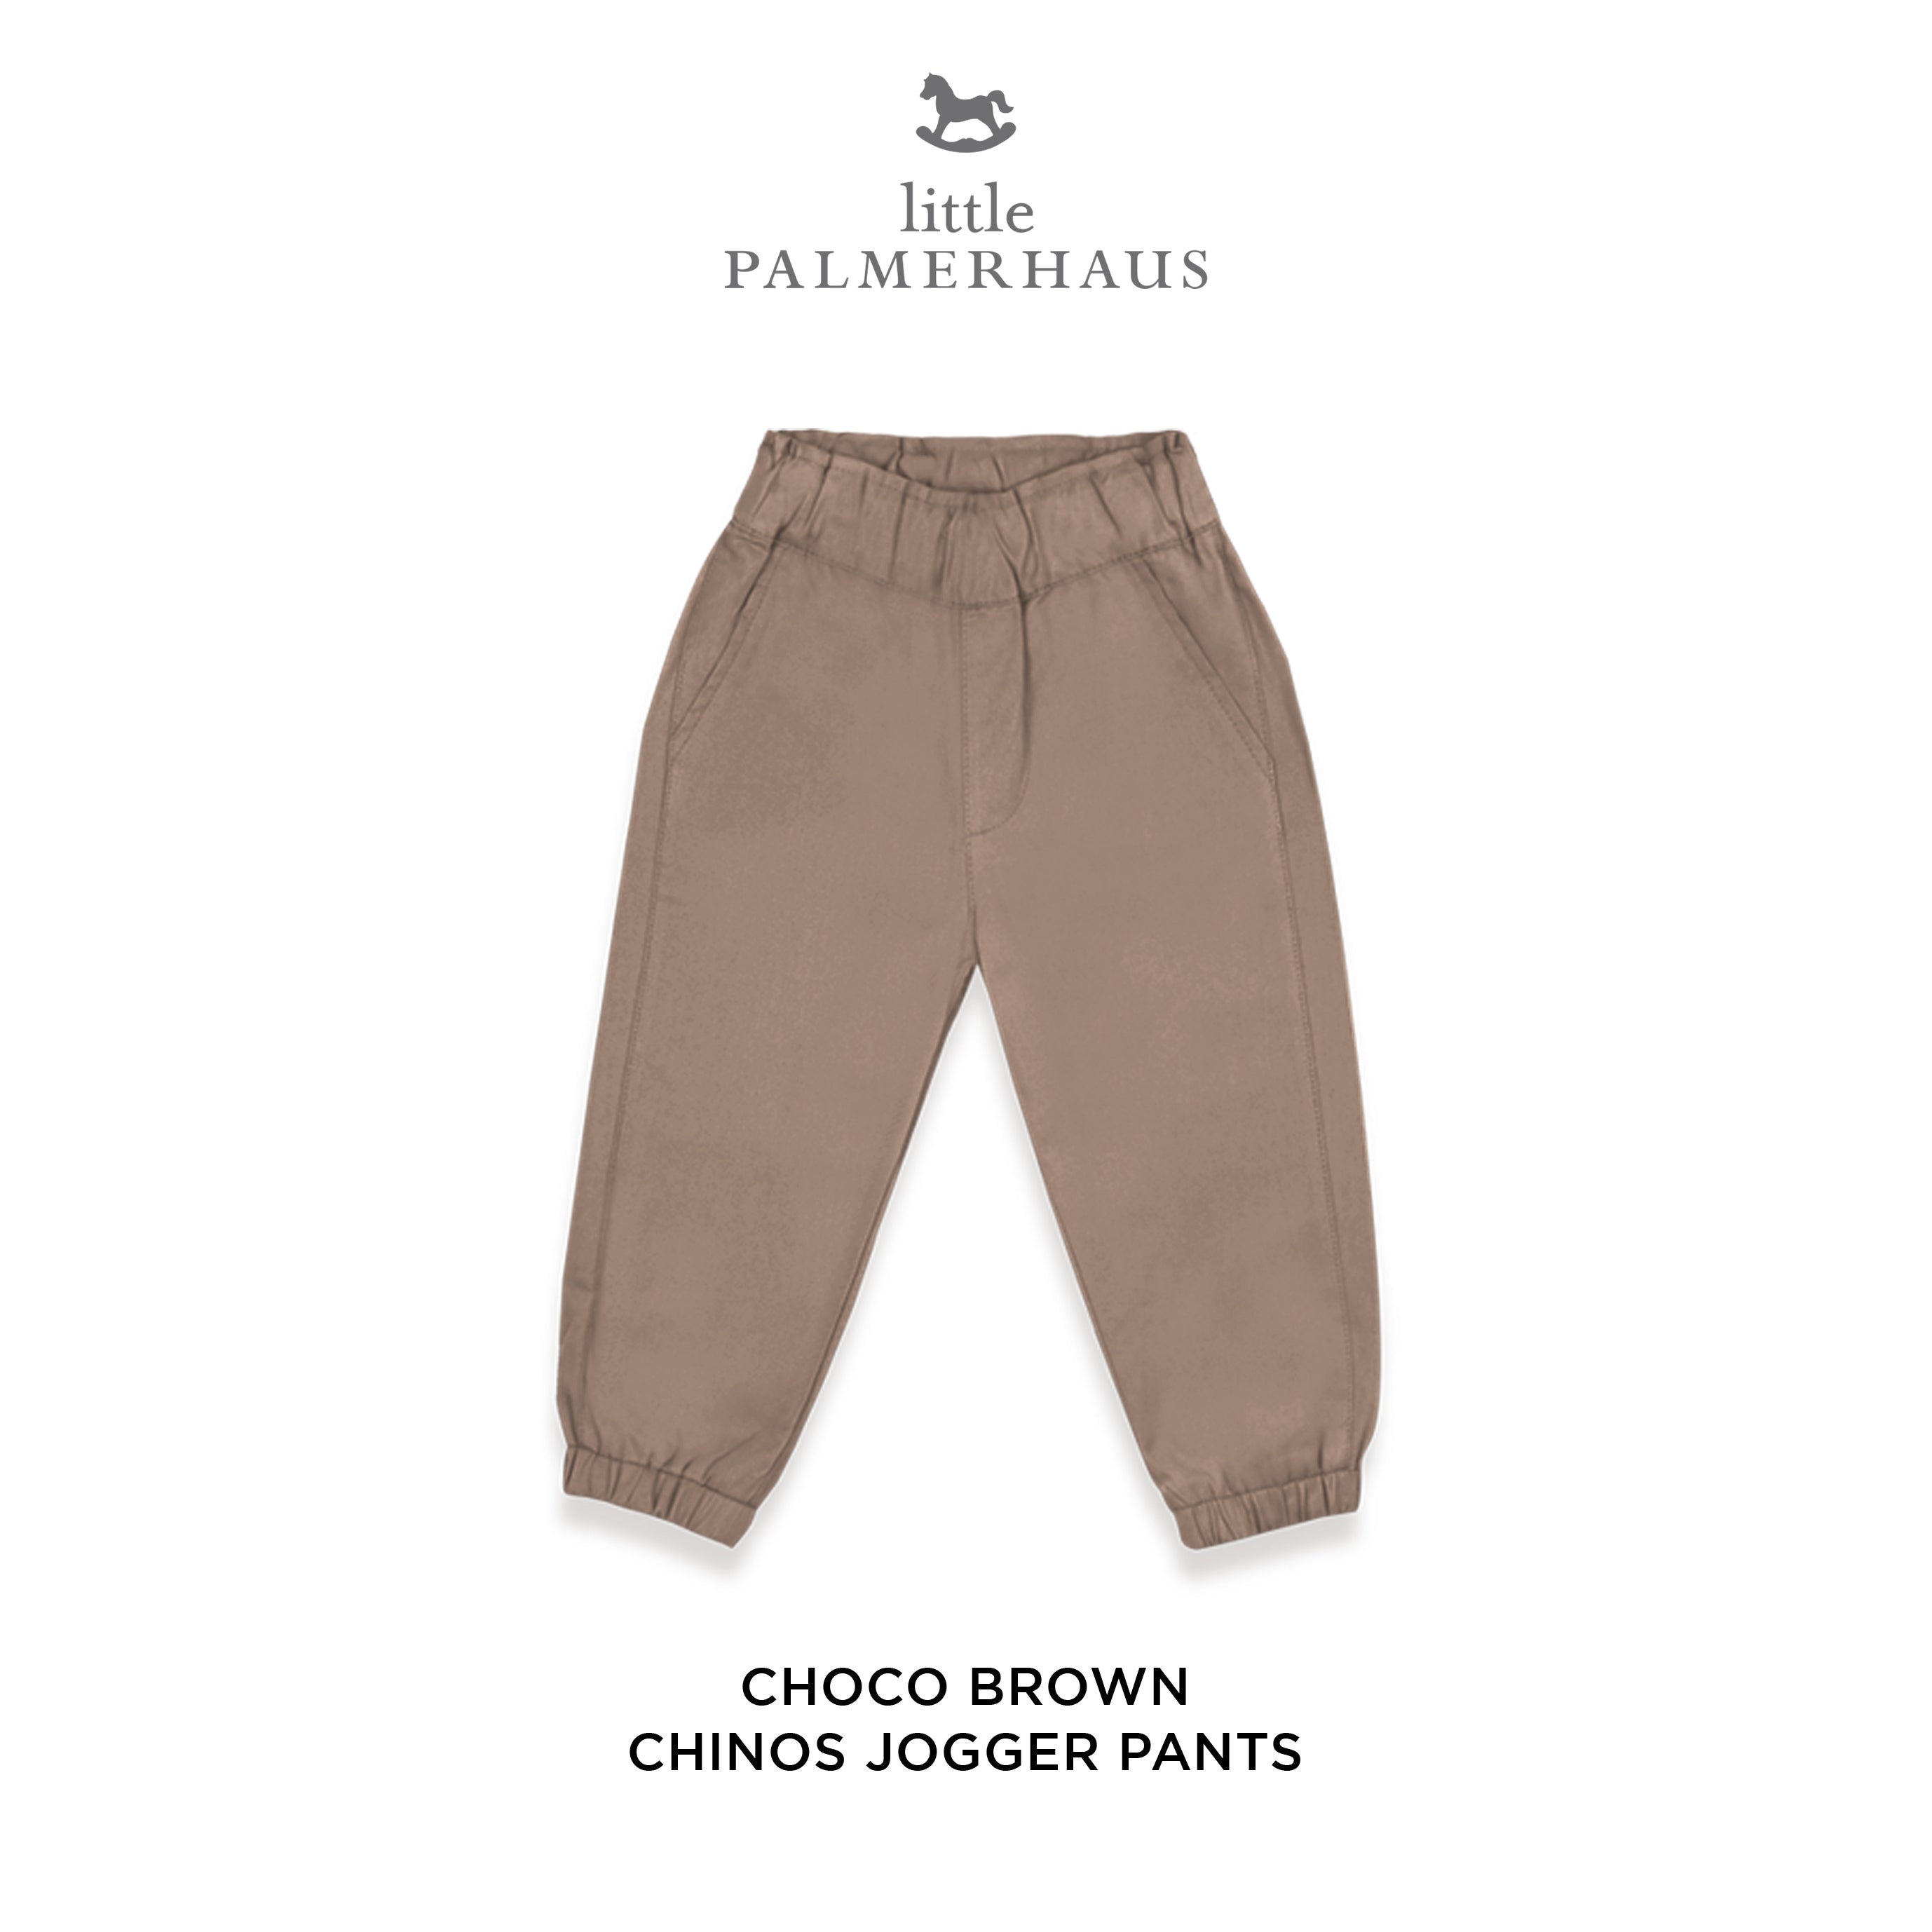 Chinos Jogger Pants 6.0